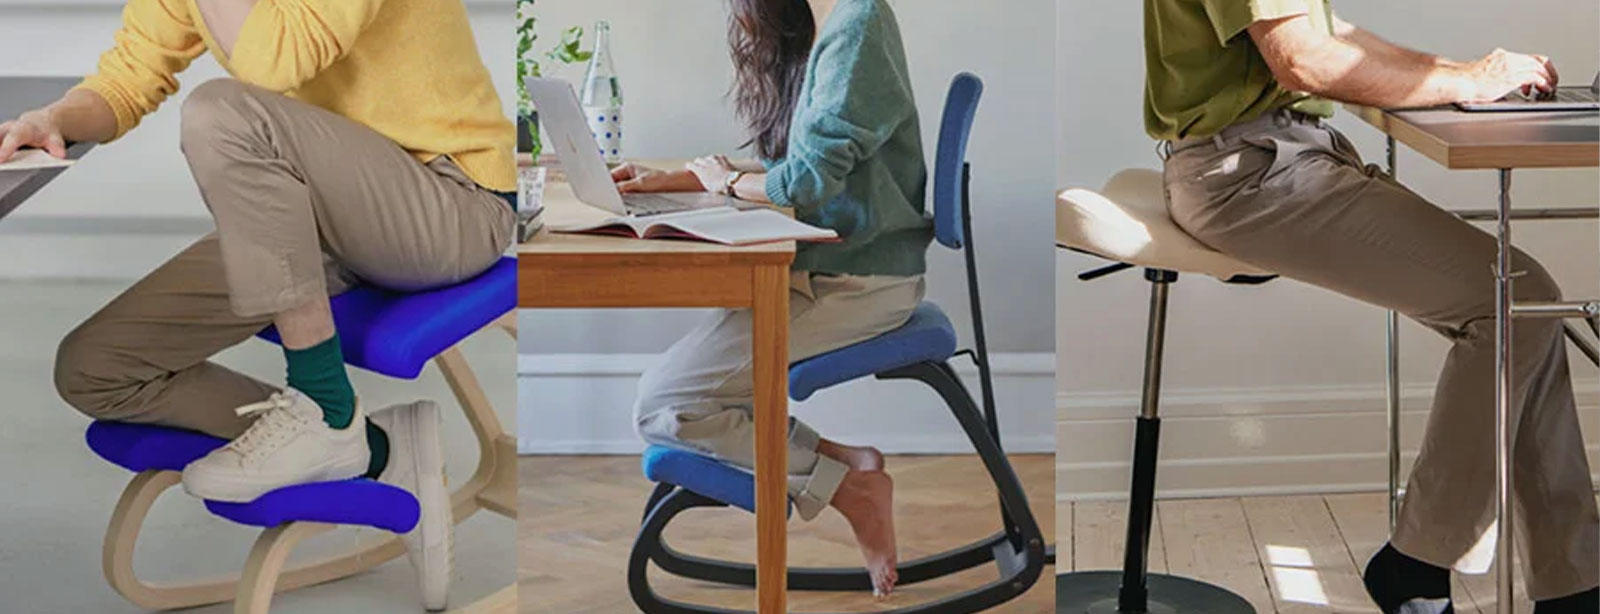 Trabaja de forma muy cómoda con las mejores sillas ergonómicas